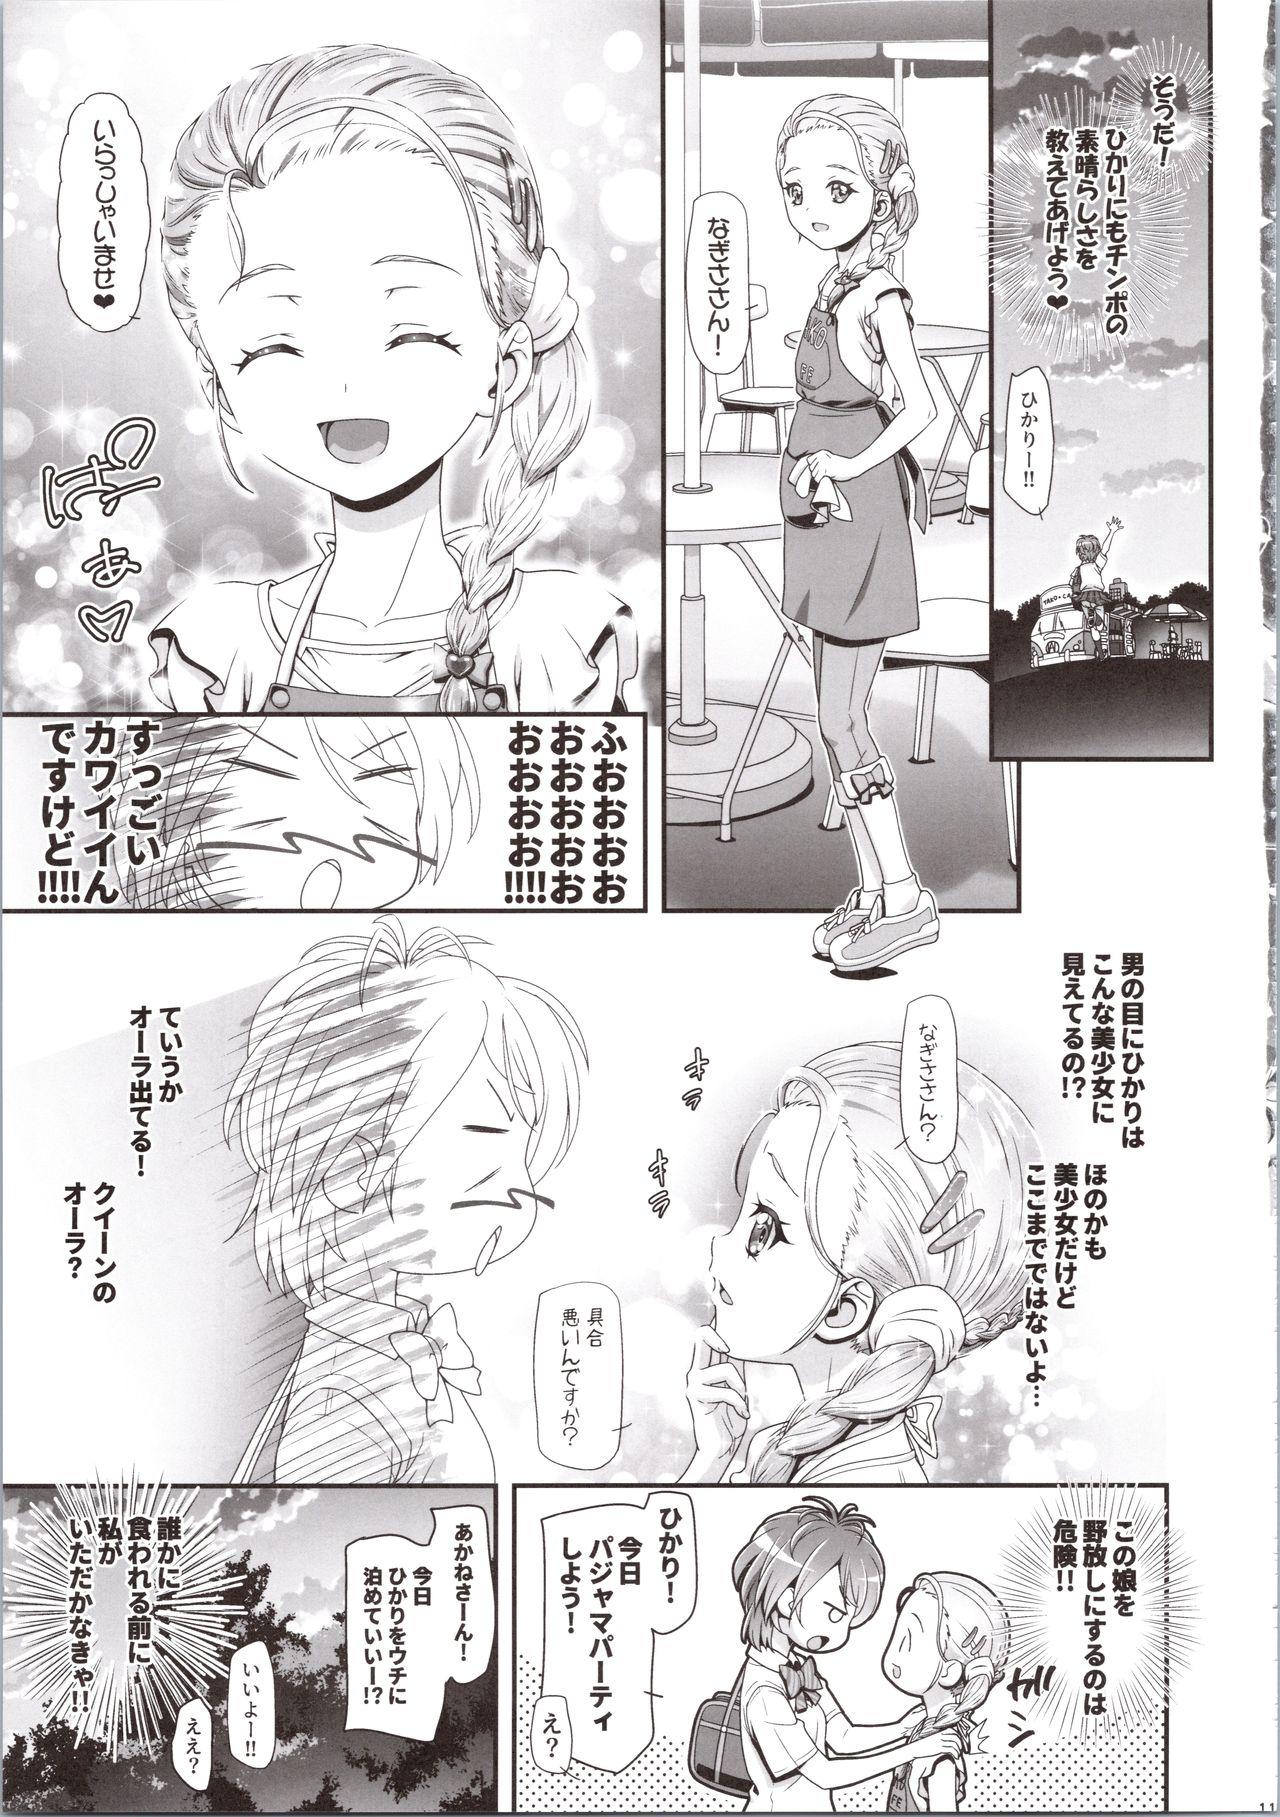 Joven Futari wa Puni Cure Max Heart - Futari wa pretty cure Workout - Page 11